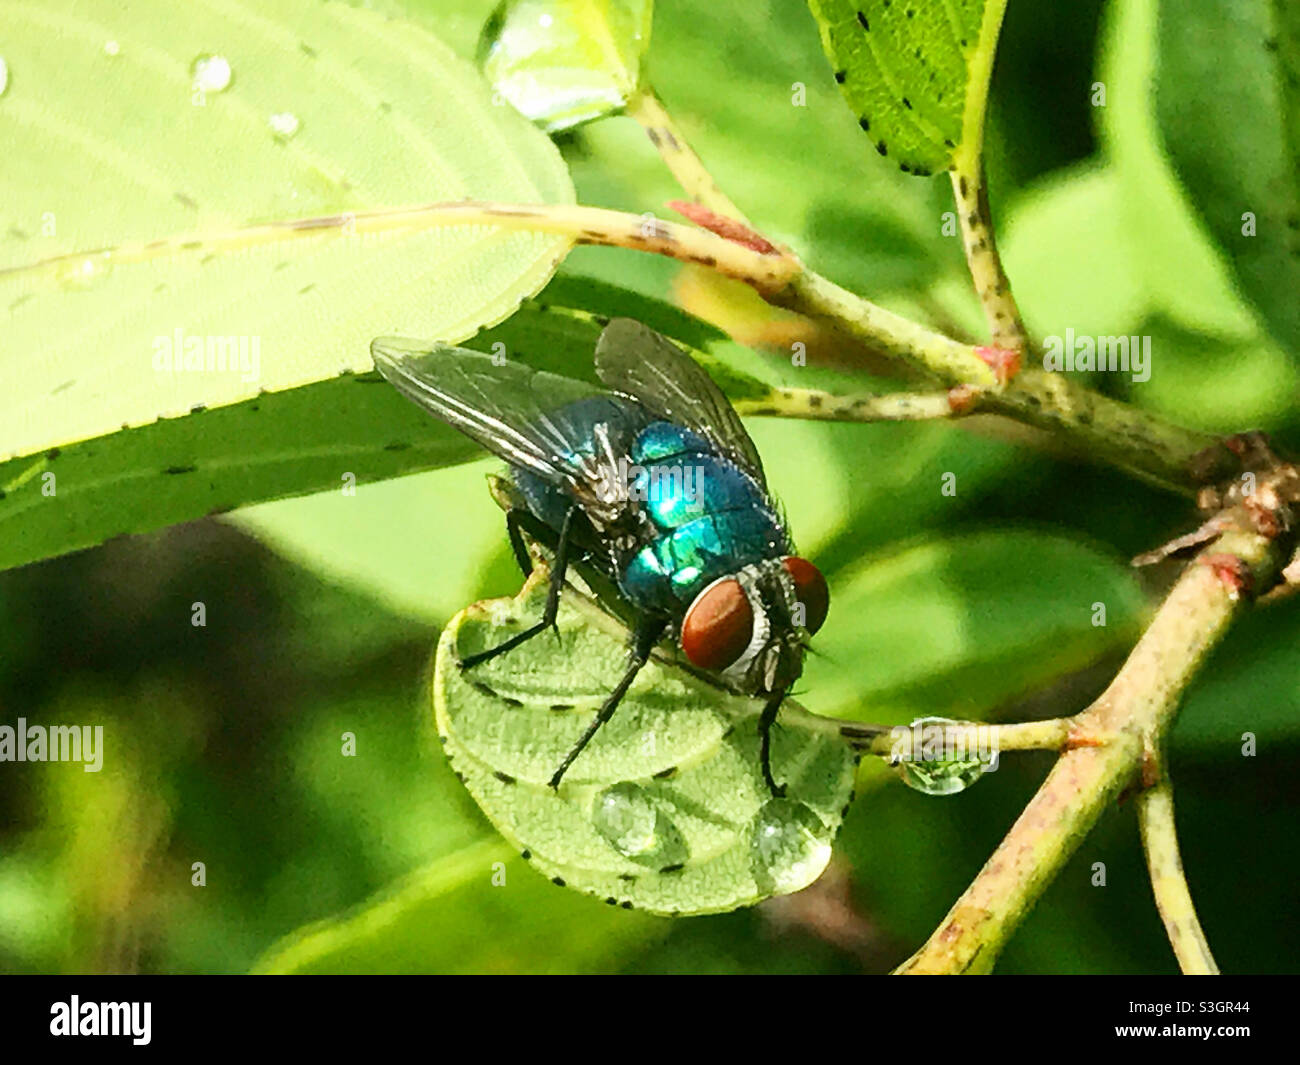 Eine blaue Fliege trinkt in Mexiko in einem grünen Blatt Wasser Stockfoto